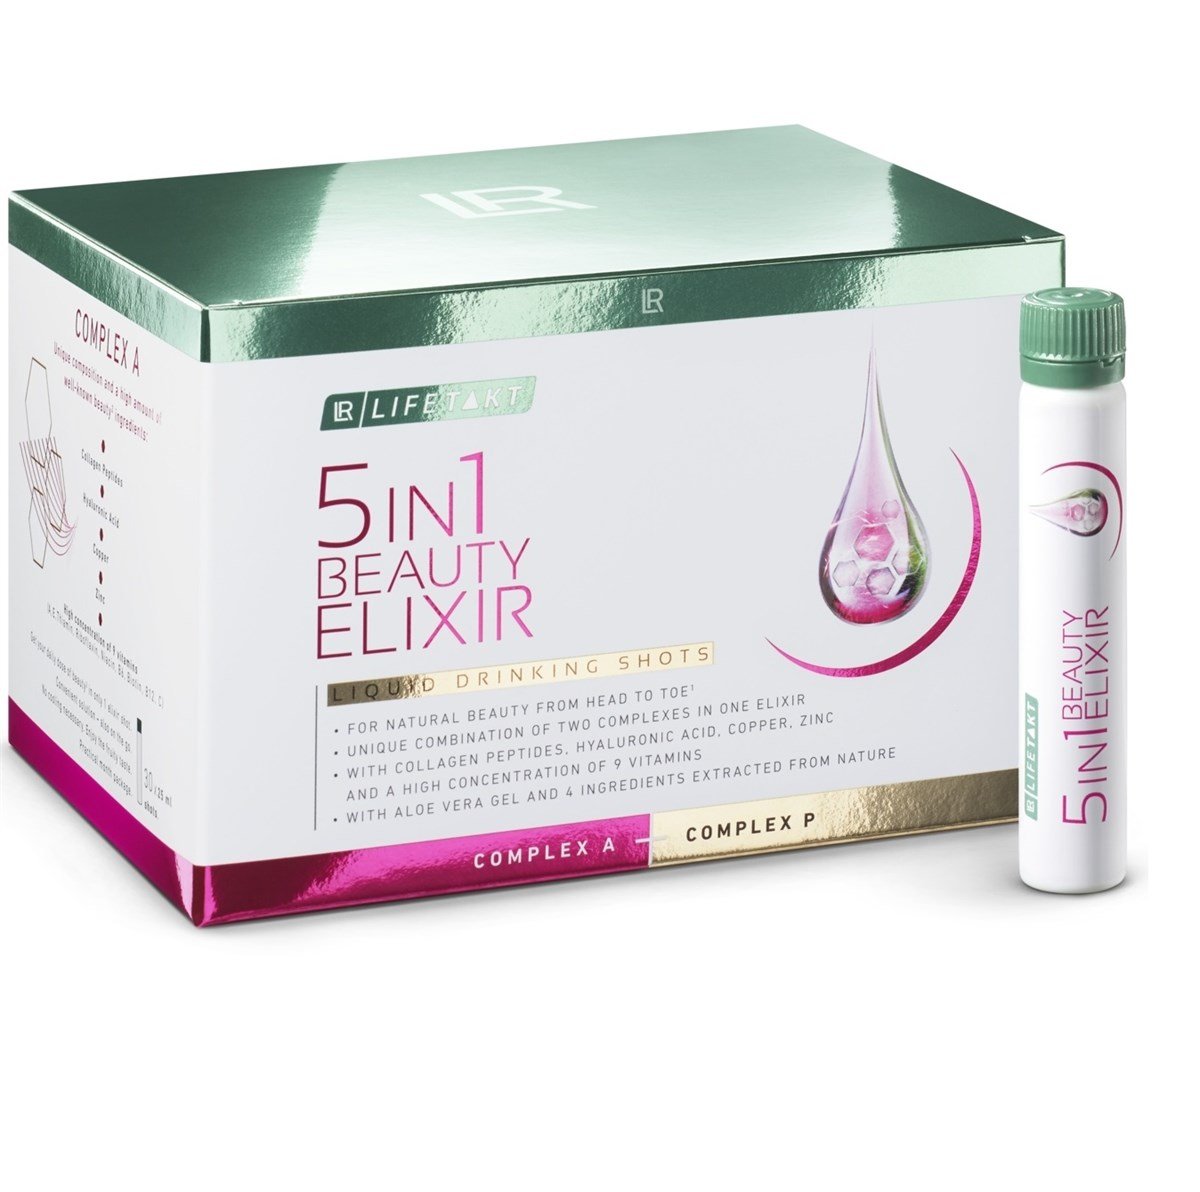 LR 5in1 Beauty Elixir, LR LIFETAKT 5'i 1 Arada Güzellik İksiri | LR Kolajen